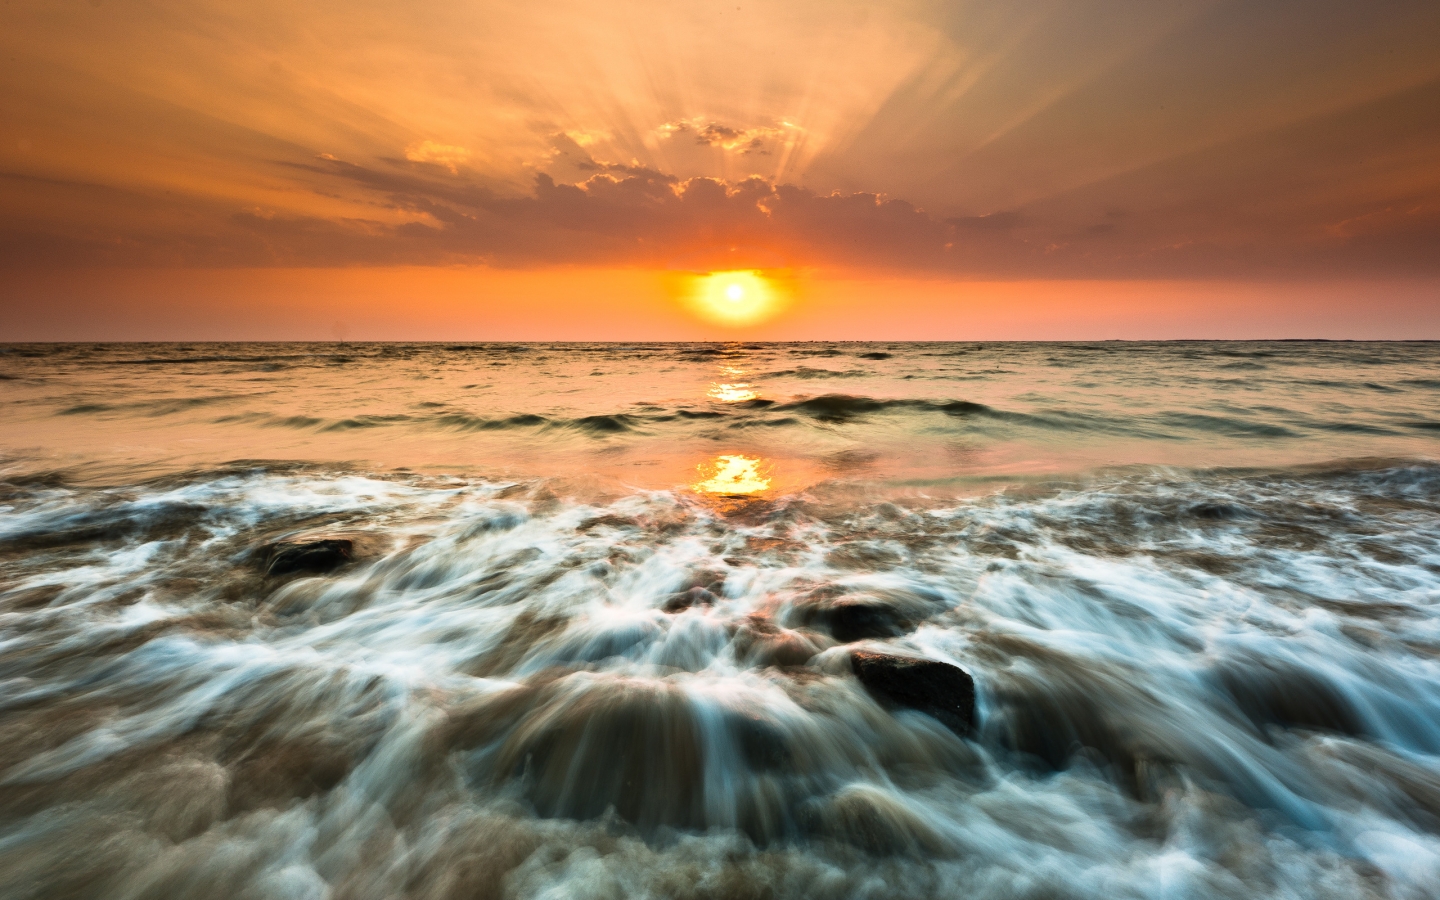 Gorai Beach Sunset for 1440 x 900 widescreen resolution